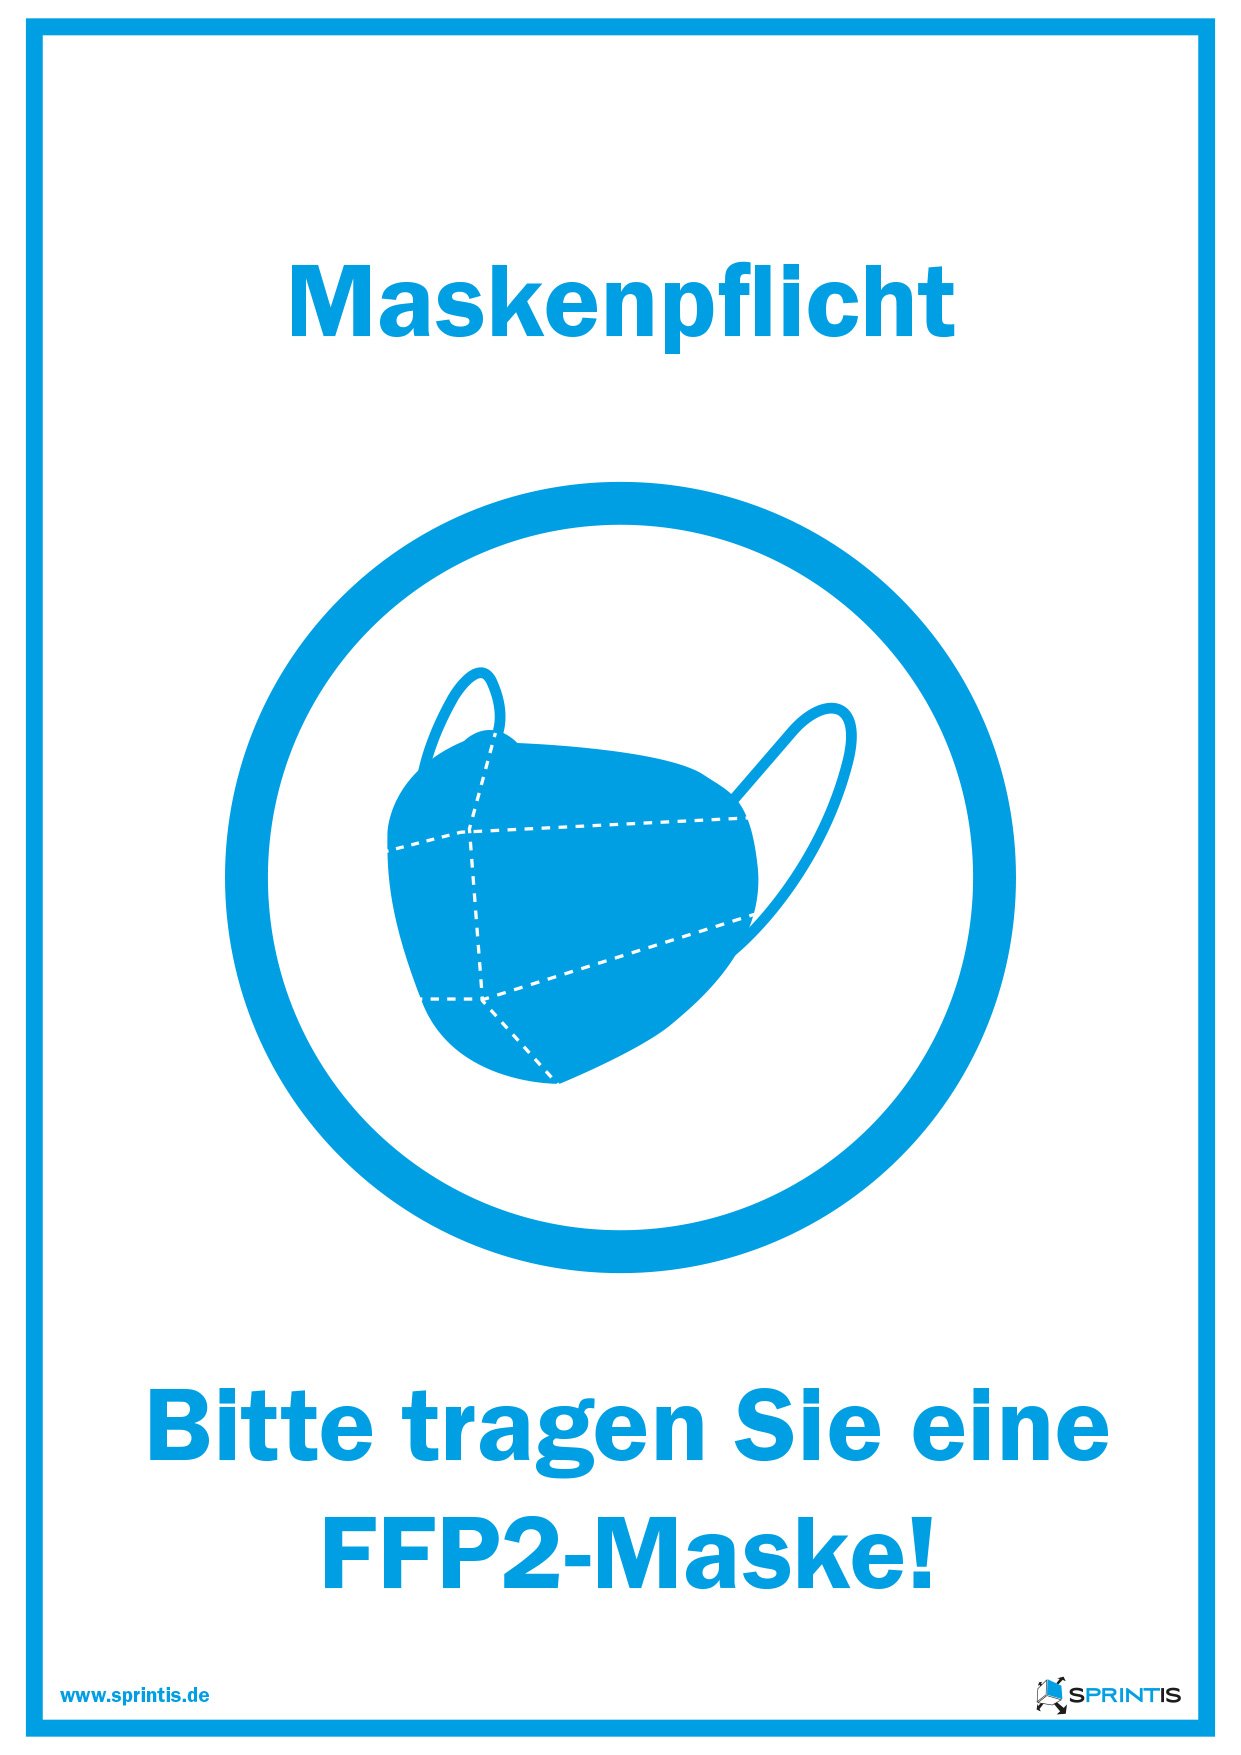 Plakat Maskenpflicht mit FFP2-Maske in A5, A4